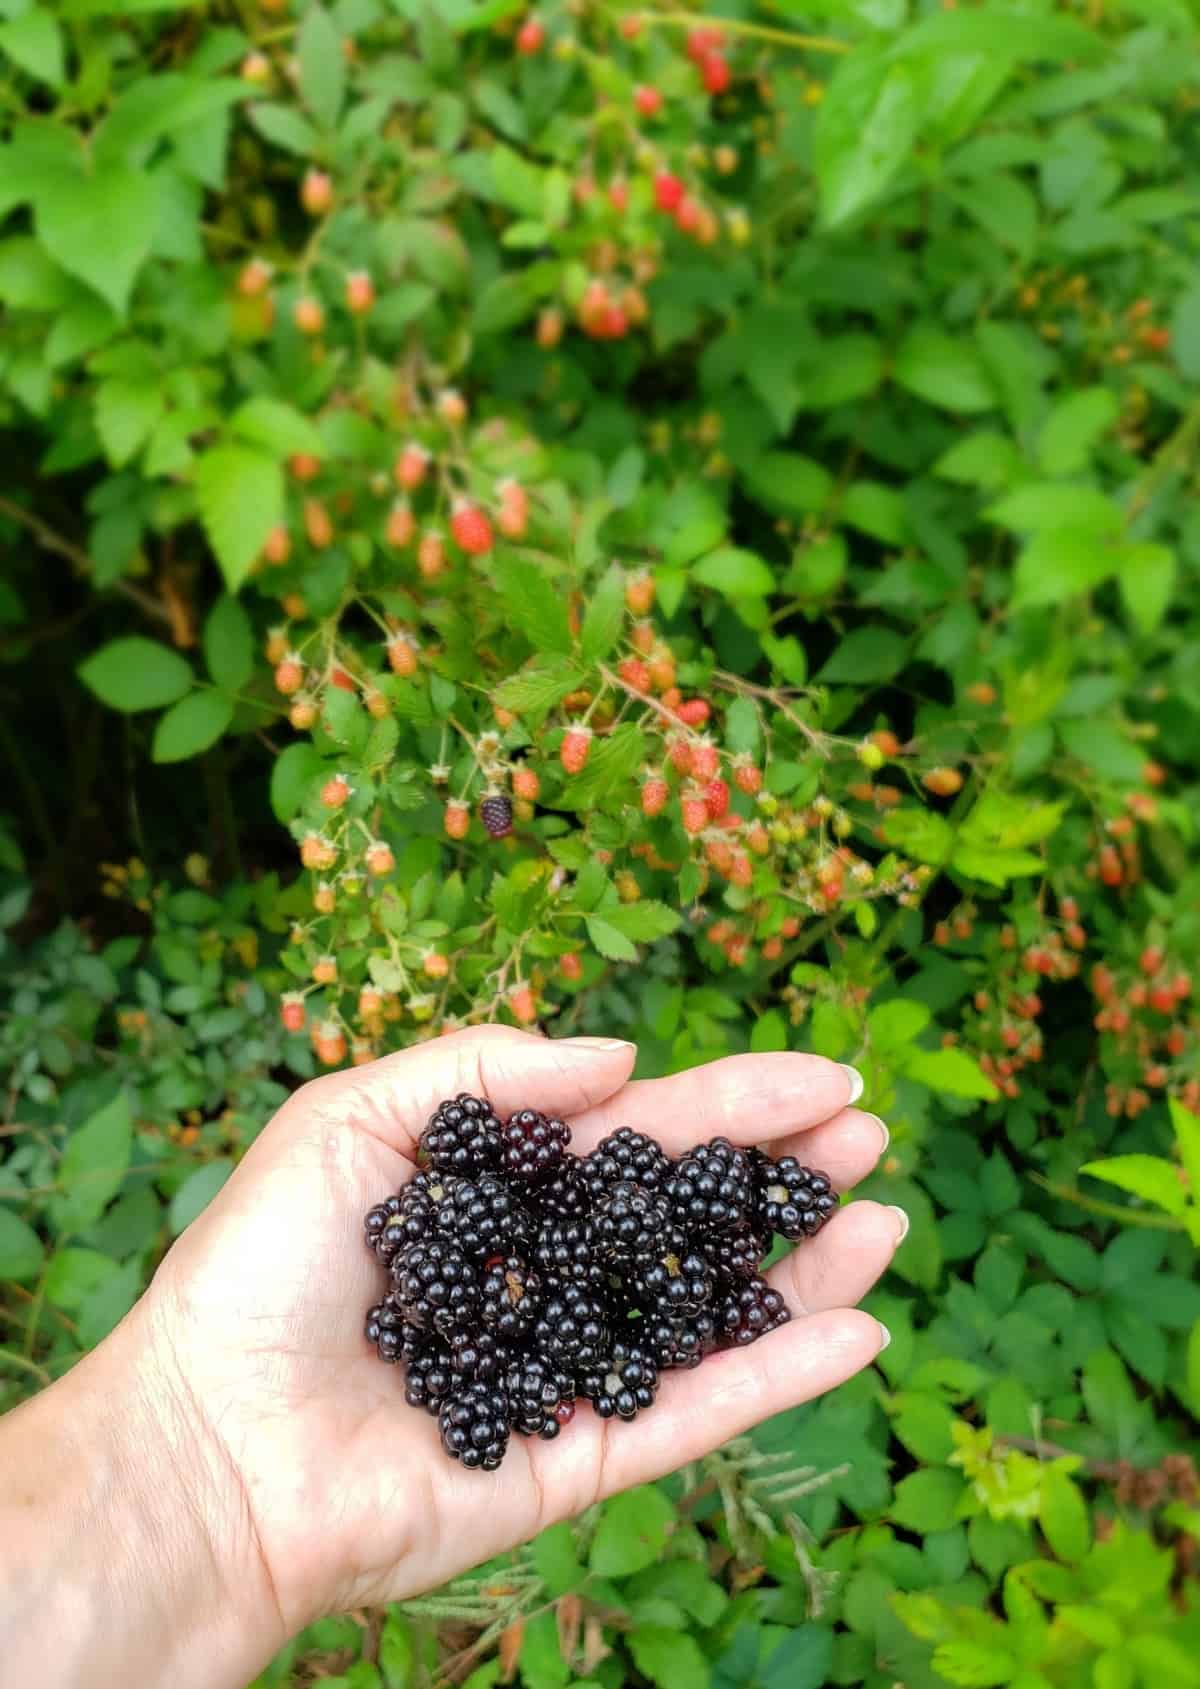 Hand holding fresh blackberries in front of a blackberry bramble bush.